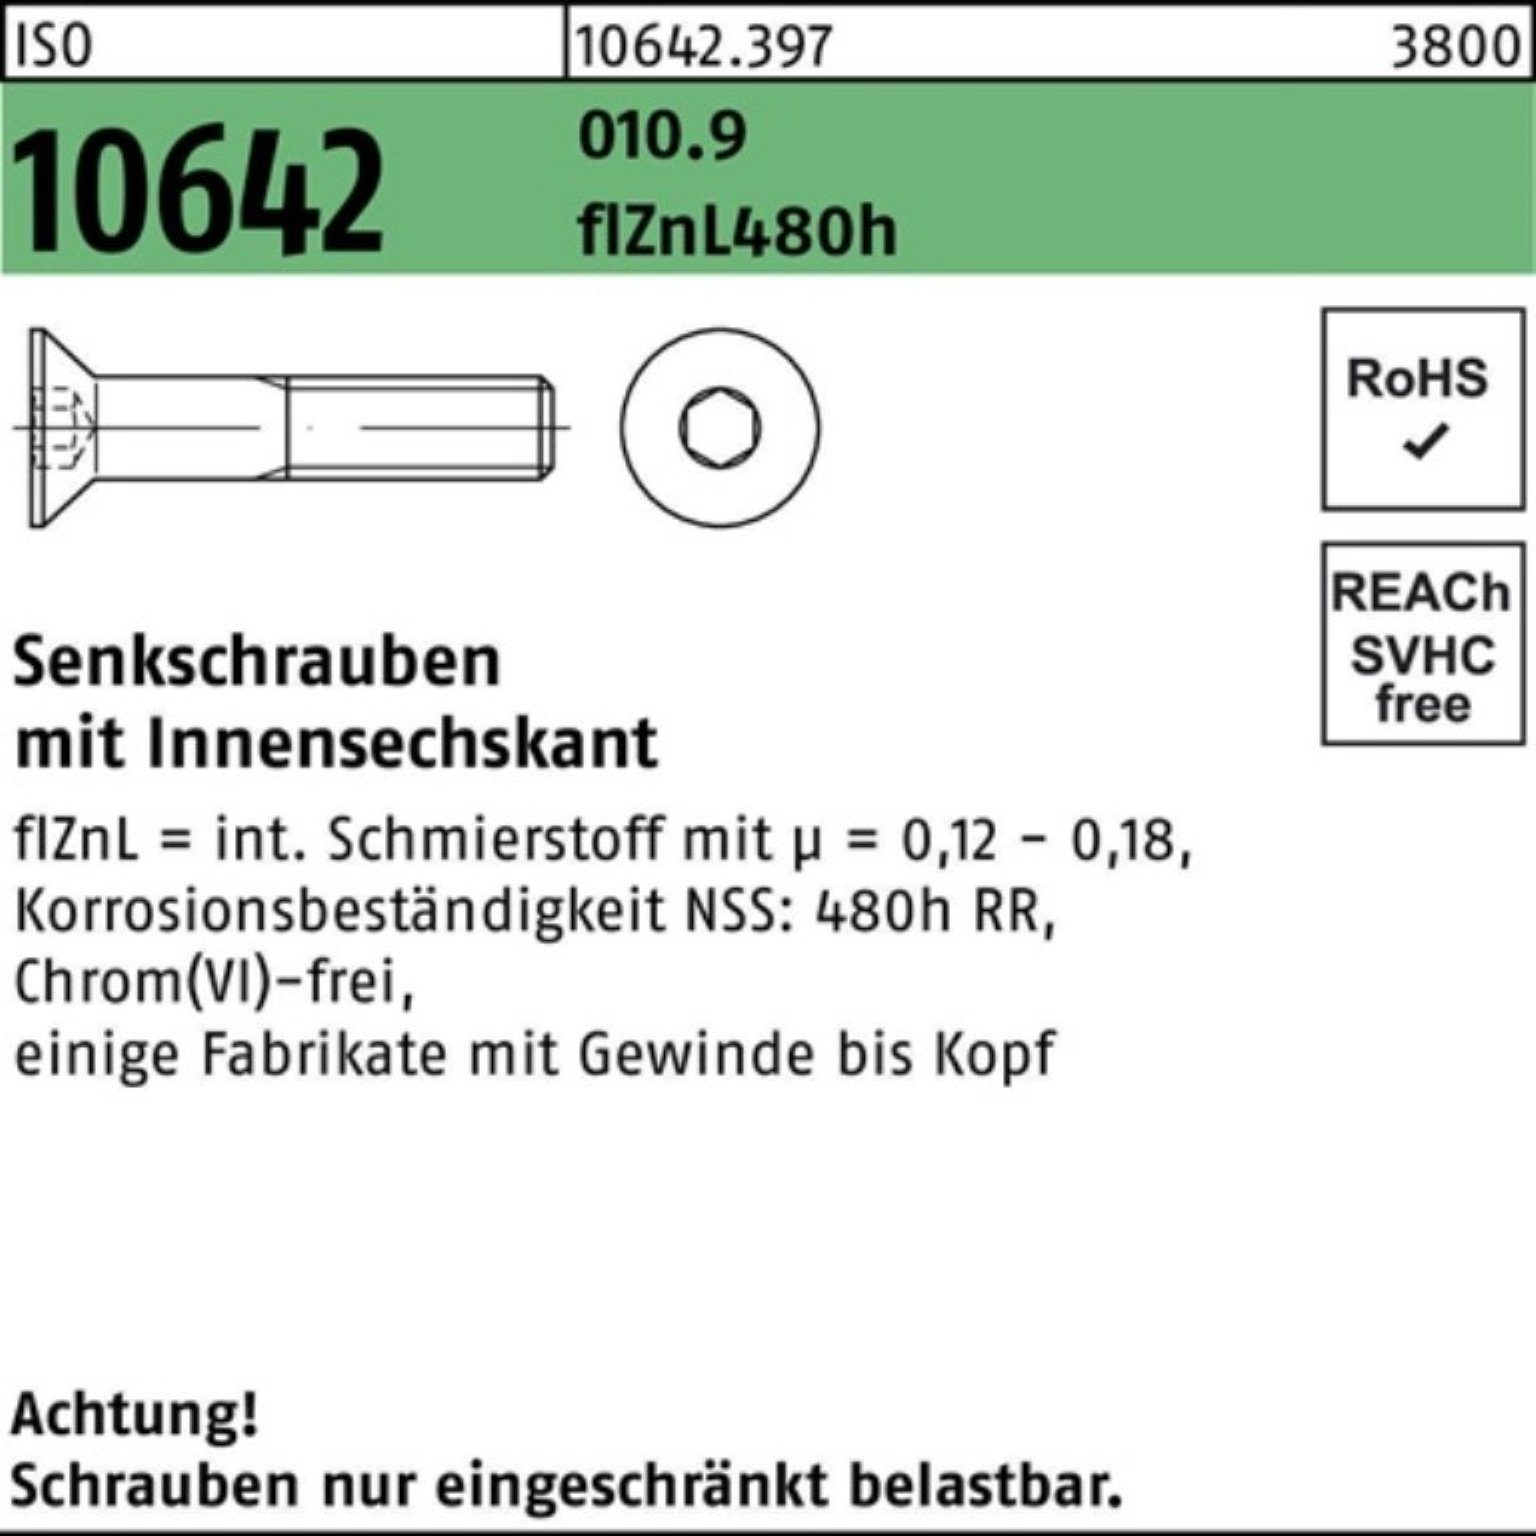 zi Reyher Senkschraube 480h 10642 ISO M10x45 100er 010.9 flZnL Senkschraube Pack Innen-6kt